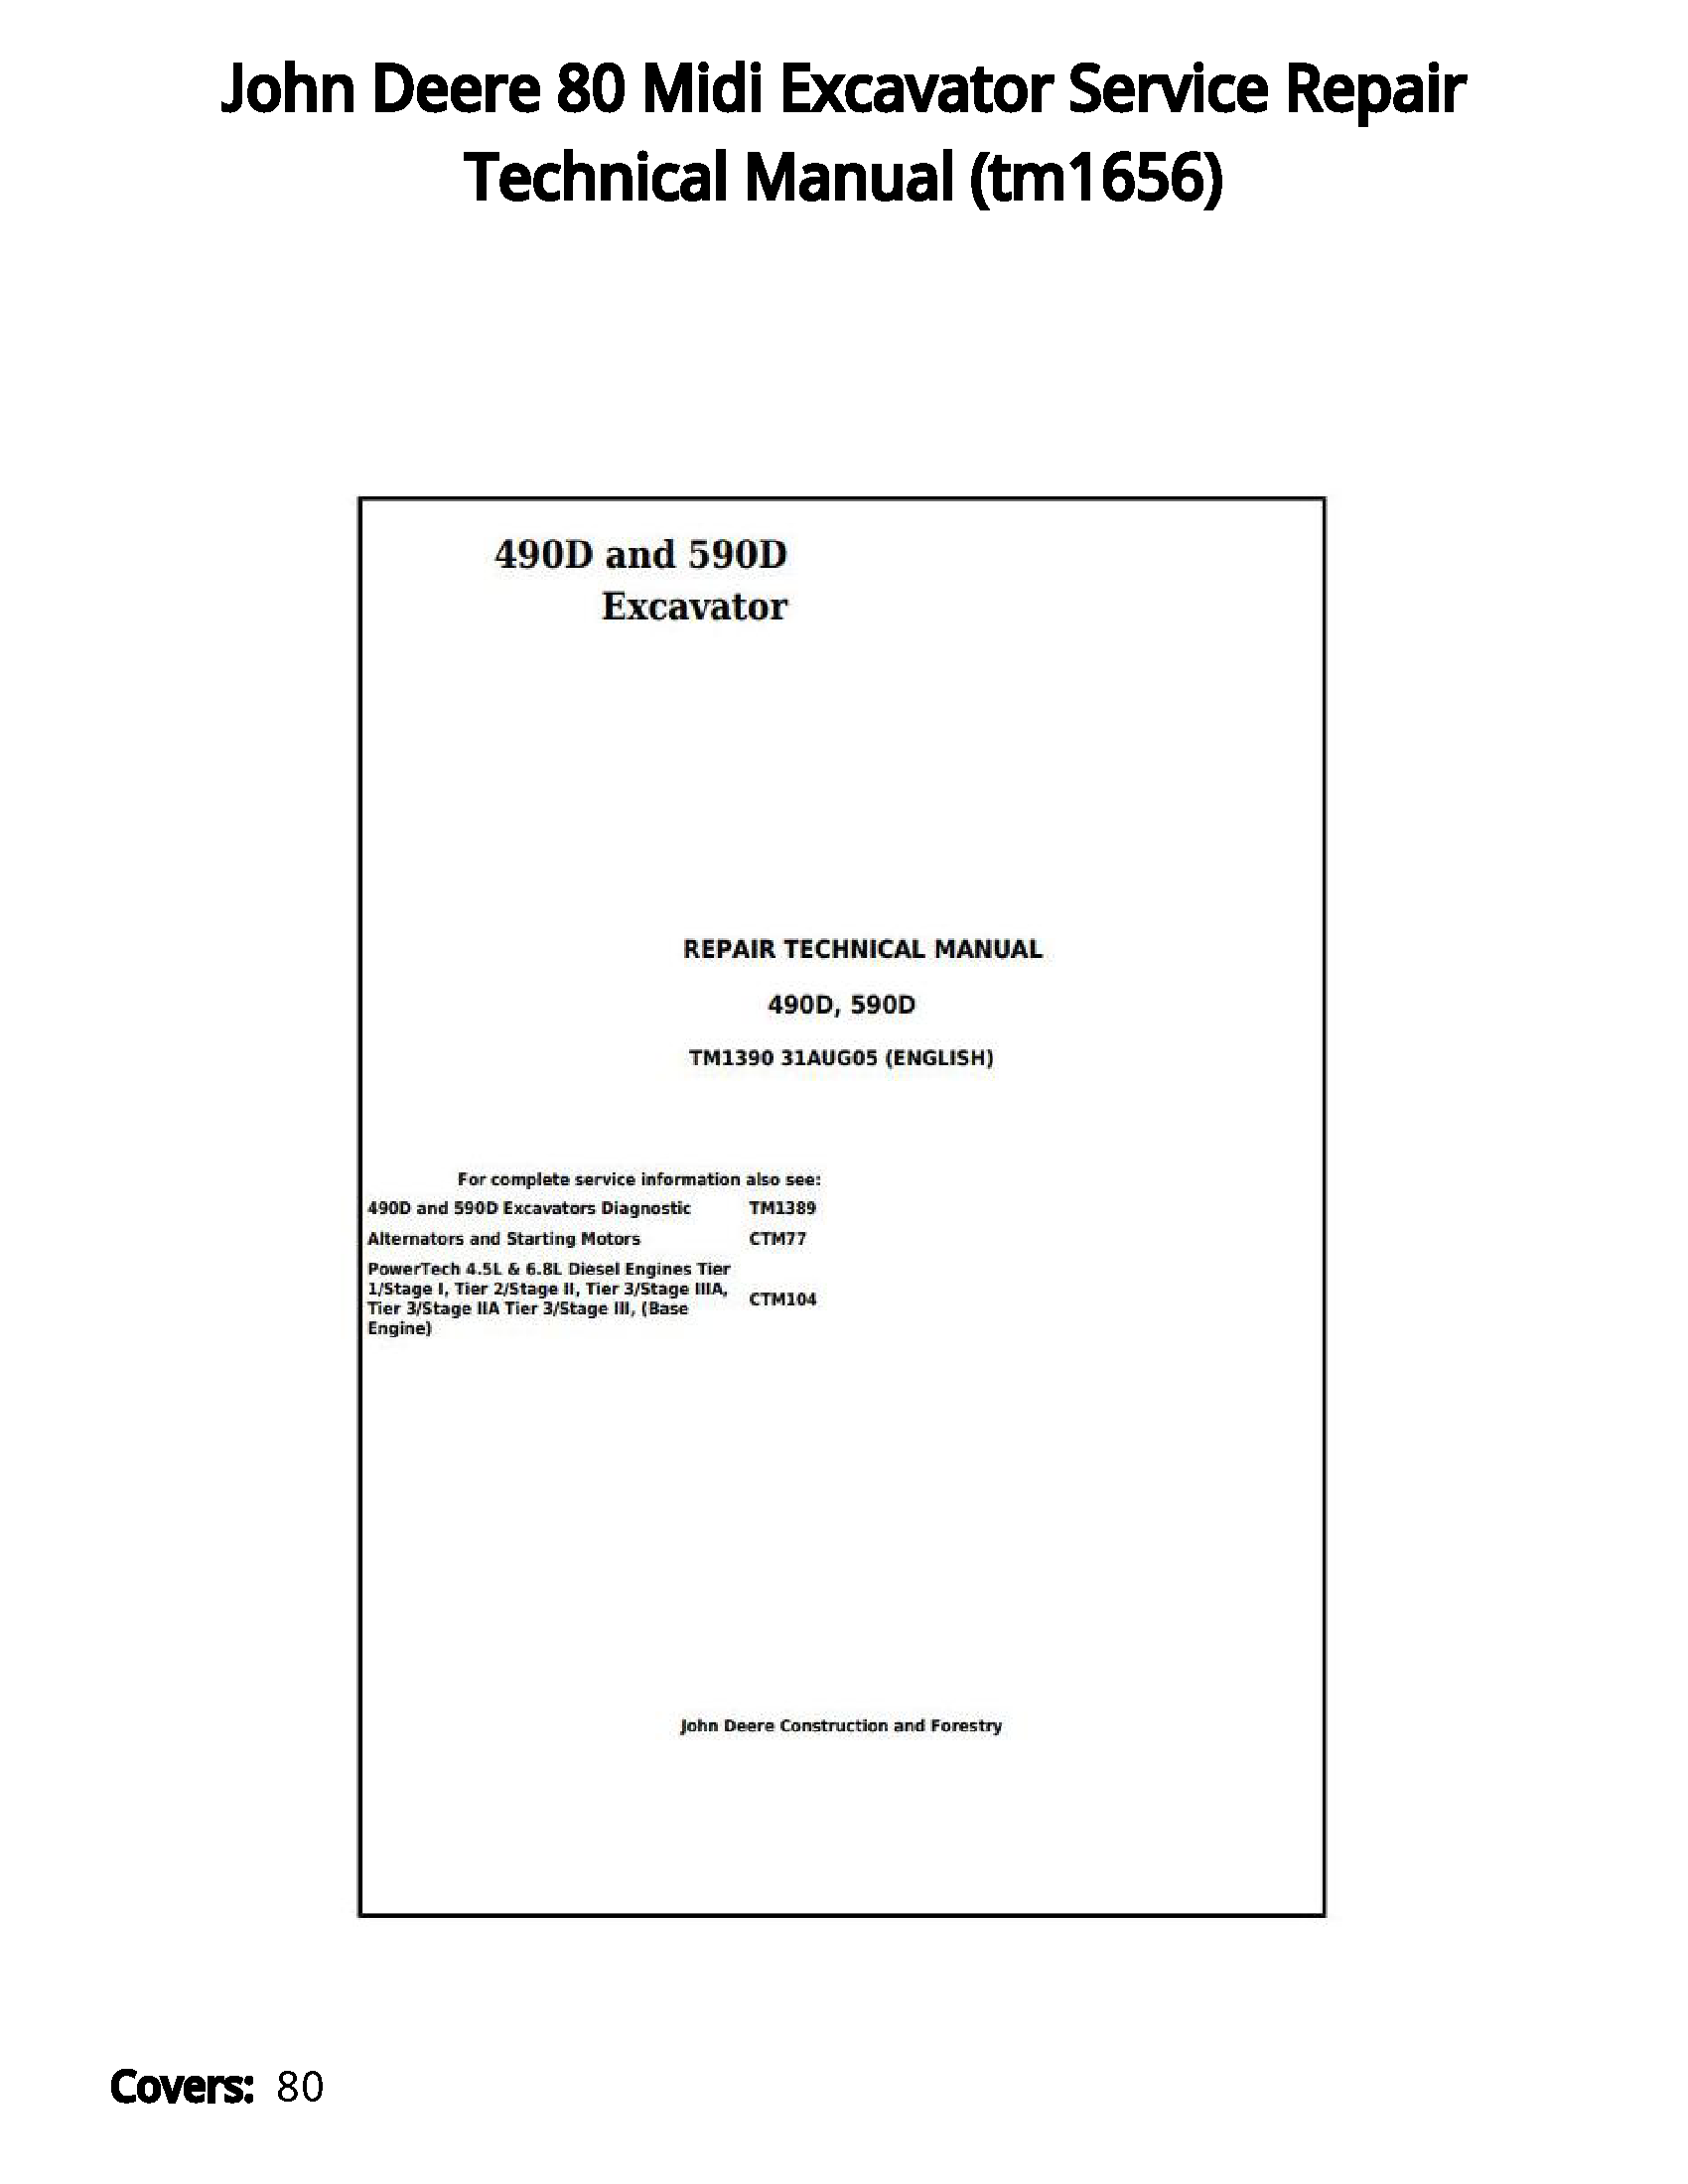 John Deere 80 Midi Excavator Service Repair Technical Manual - tm1656